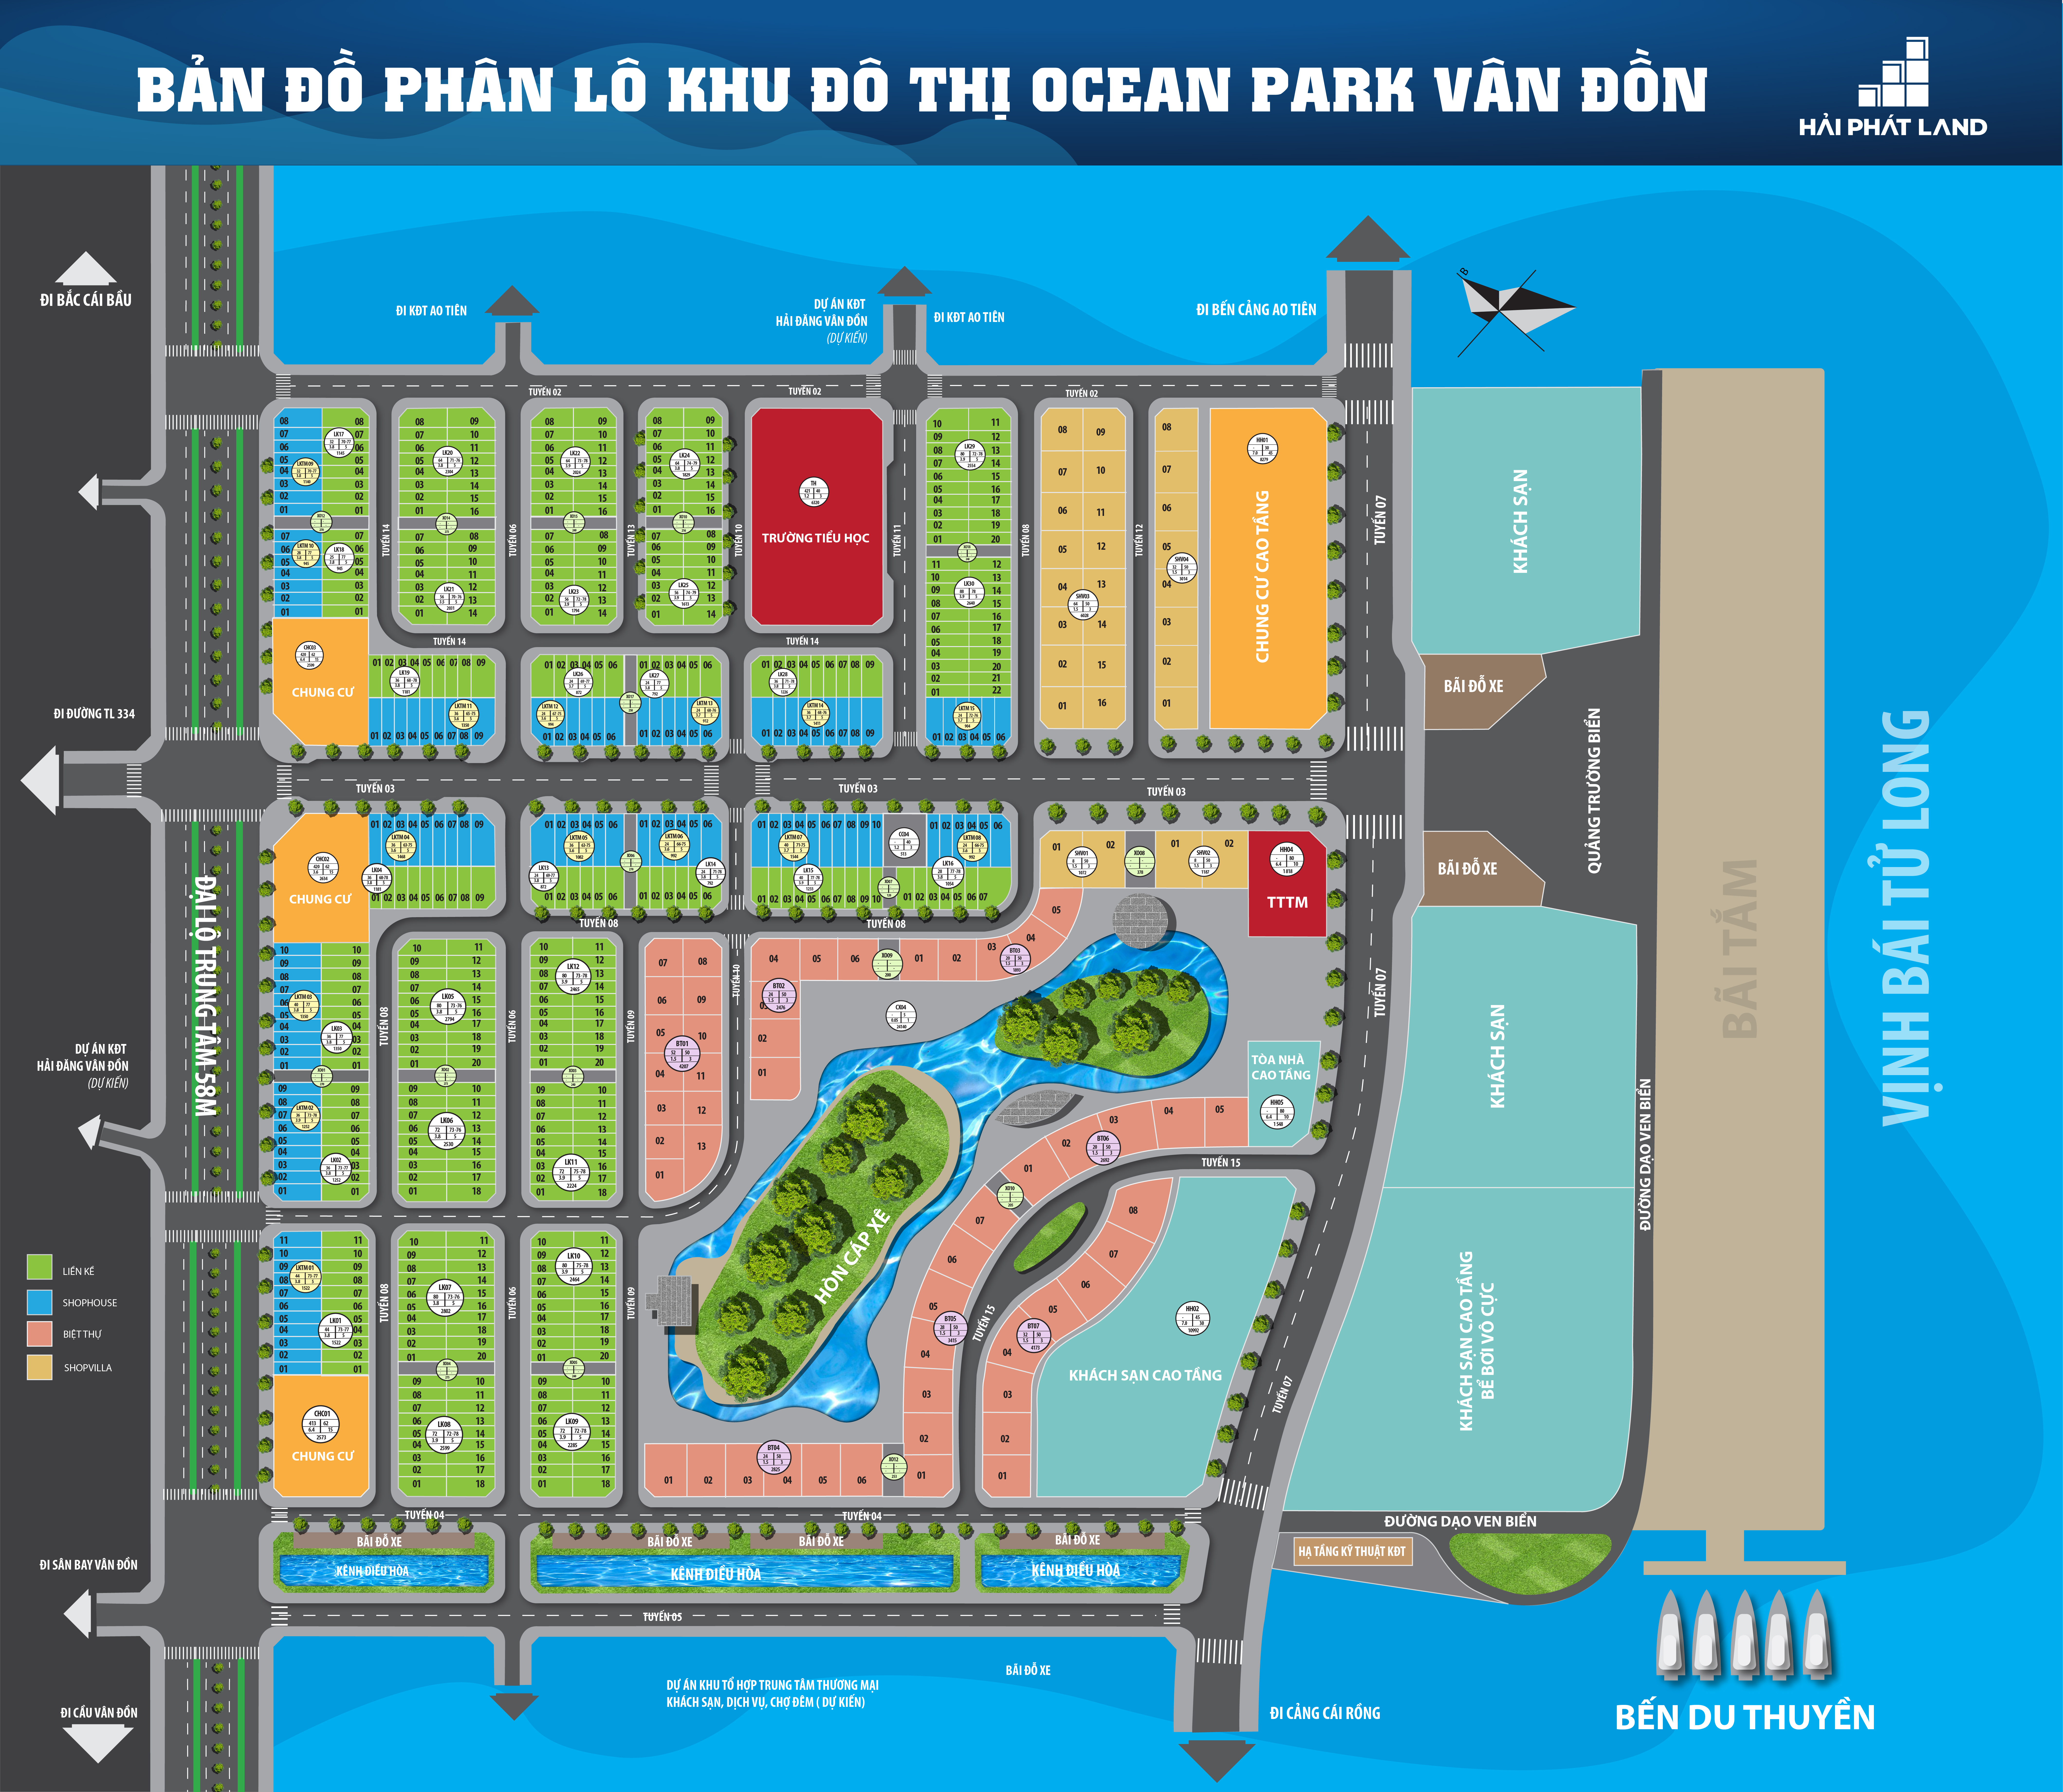 Suất ngoại giao tuyến 06 thông các dự án tại Vân đồn dự án Ocean Park giá 29 triệu/m 2